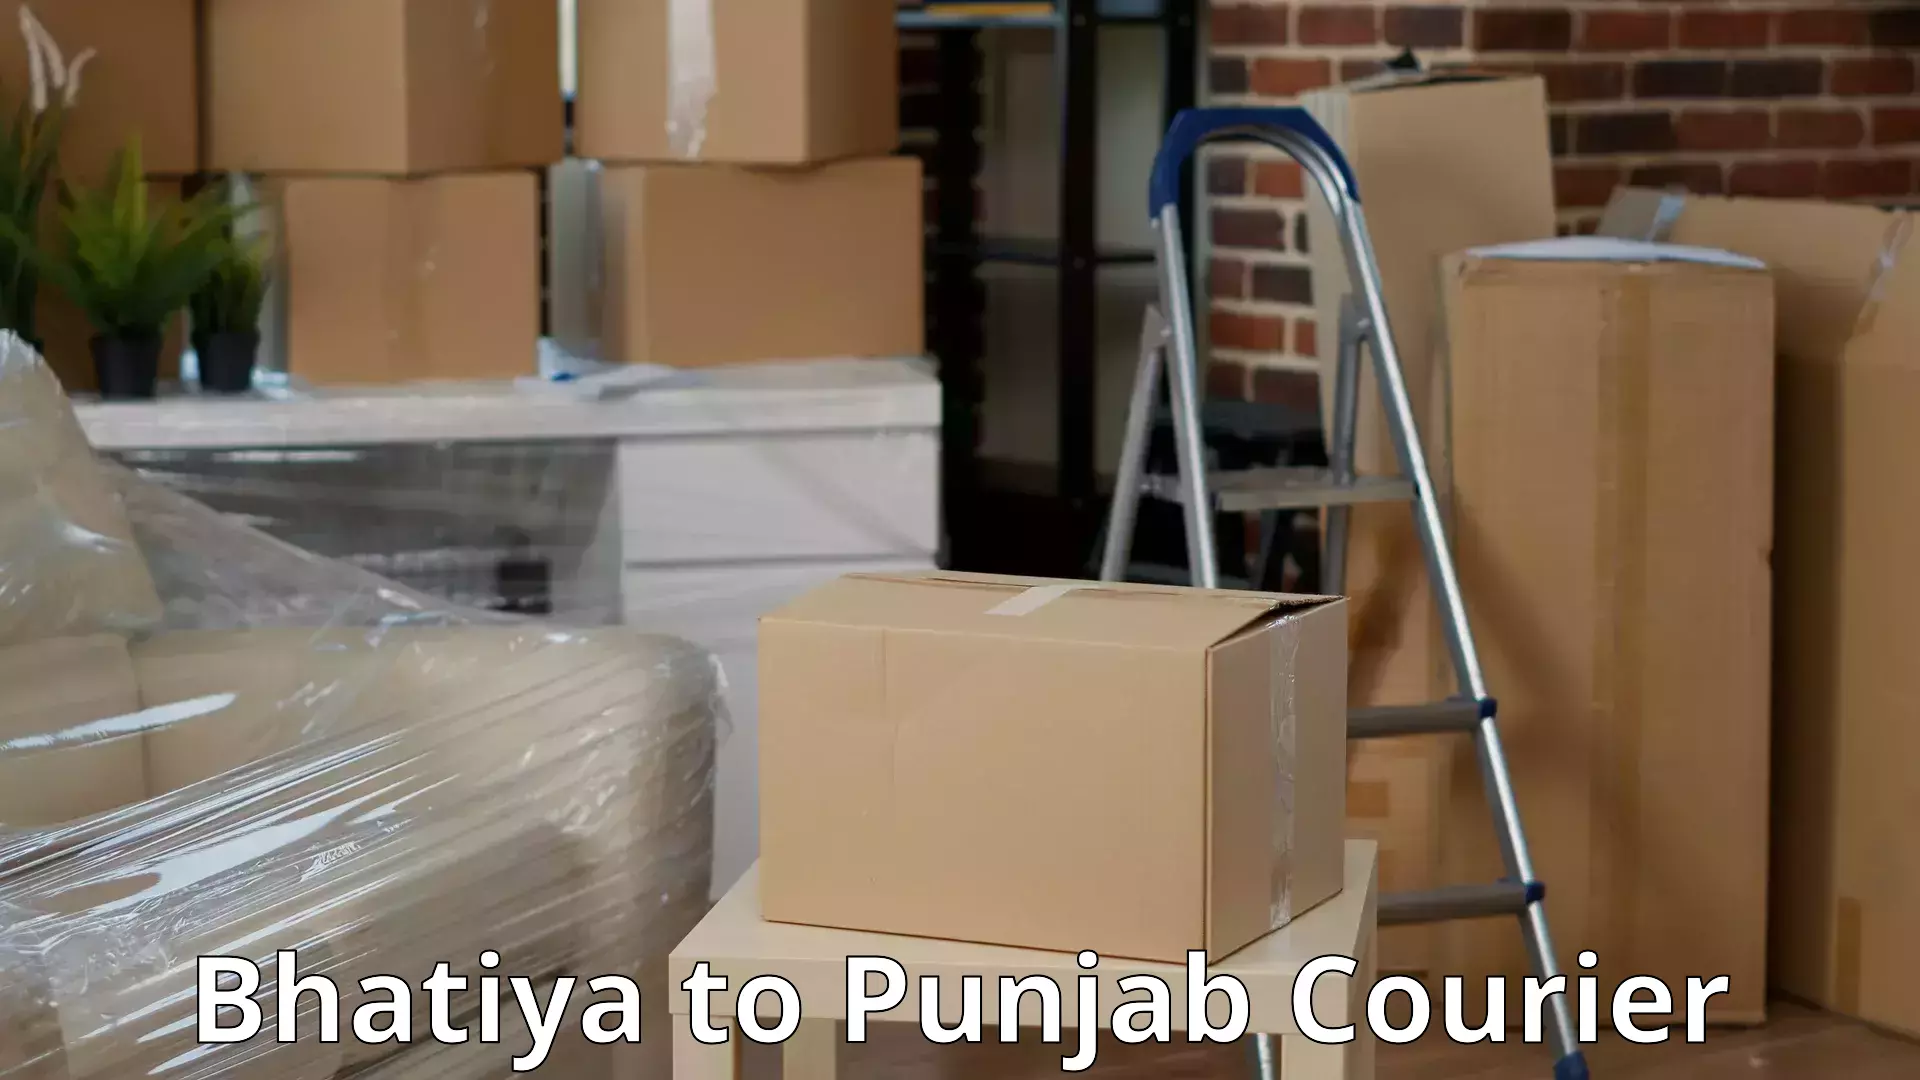 Trusted moving company Bhatiya to Punjab